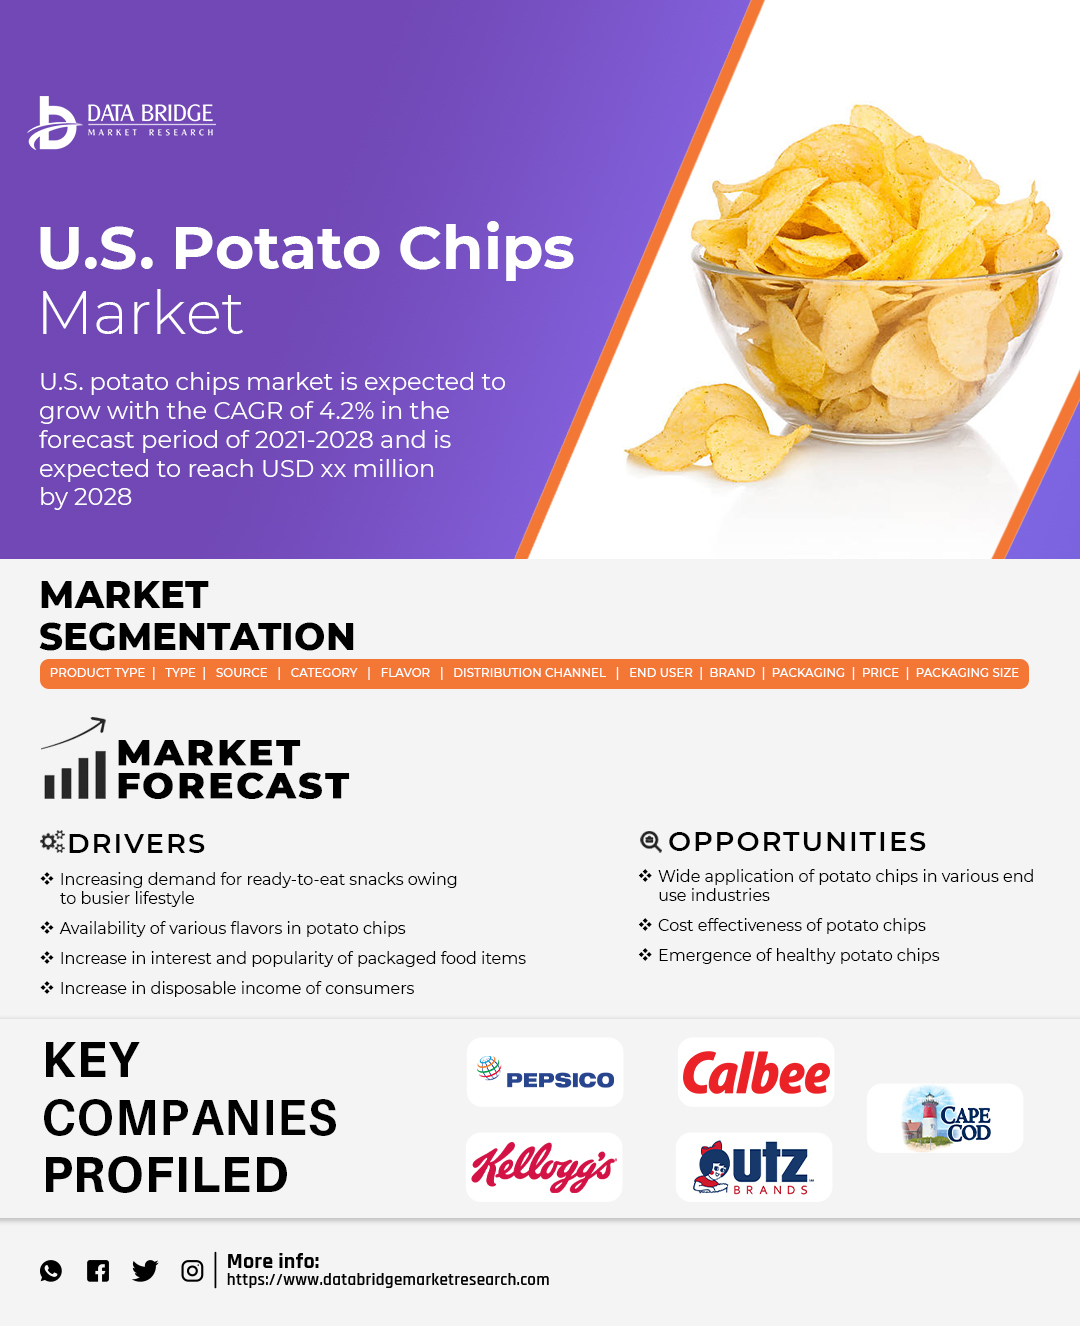 U.S. Potato Chips Market